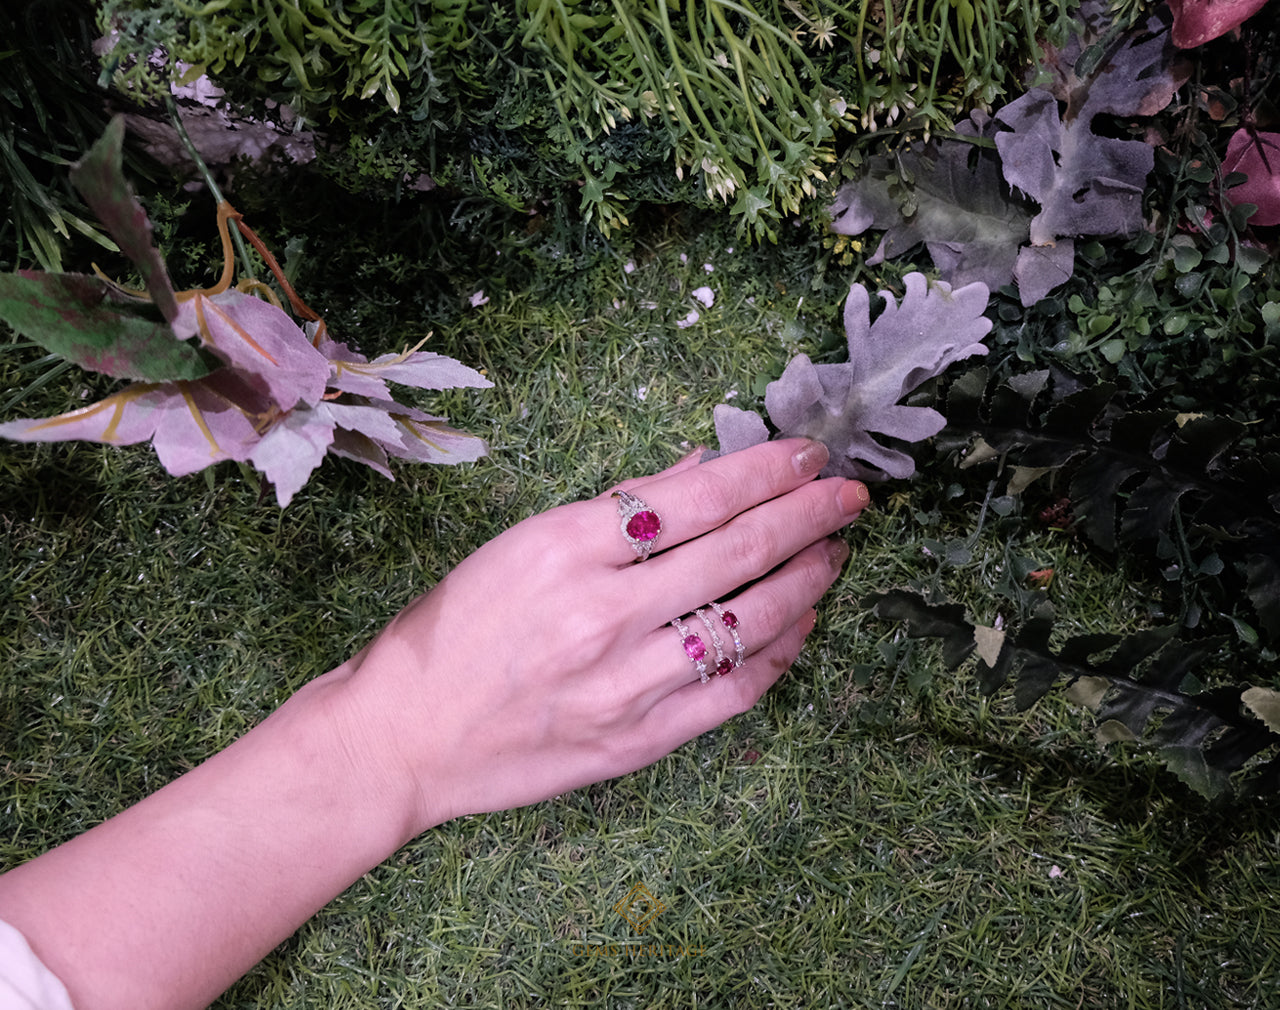 Ruby princess ring